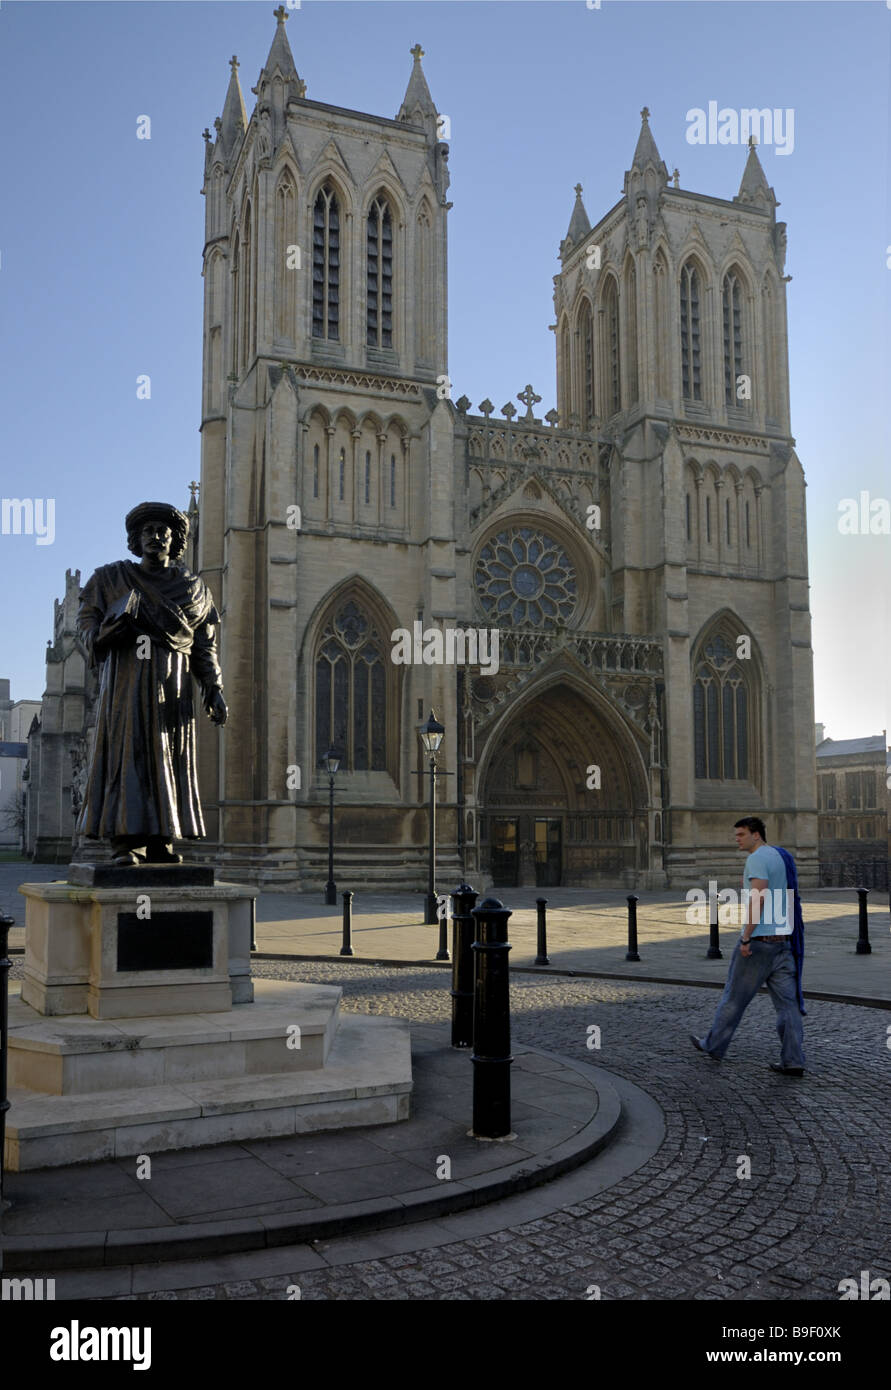 L'avant de la cathédrale de Bristol sur un matin ensoleillé avec un homme en passant devant la Statue de Raja Rammohan Roy Banque D'Images